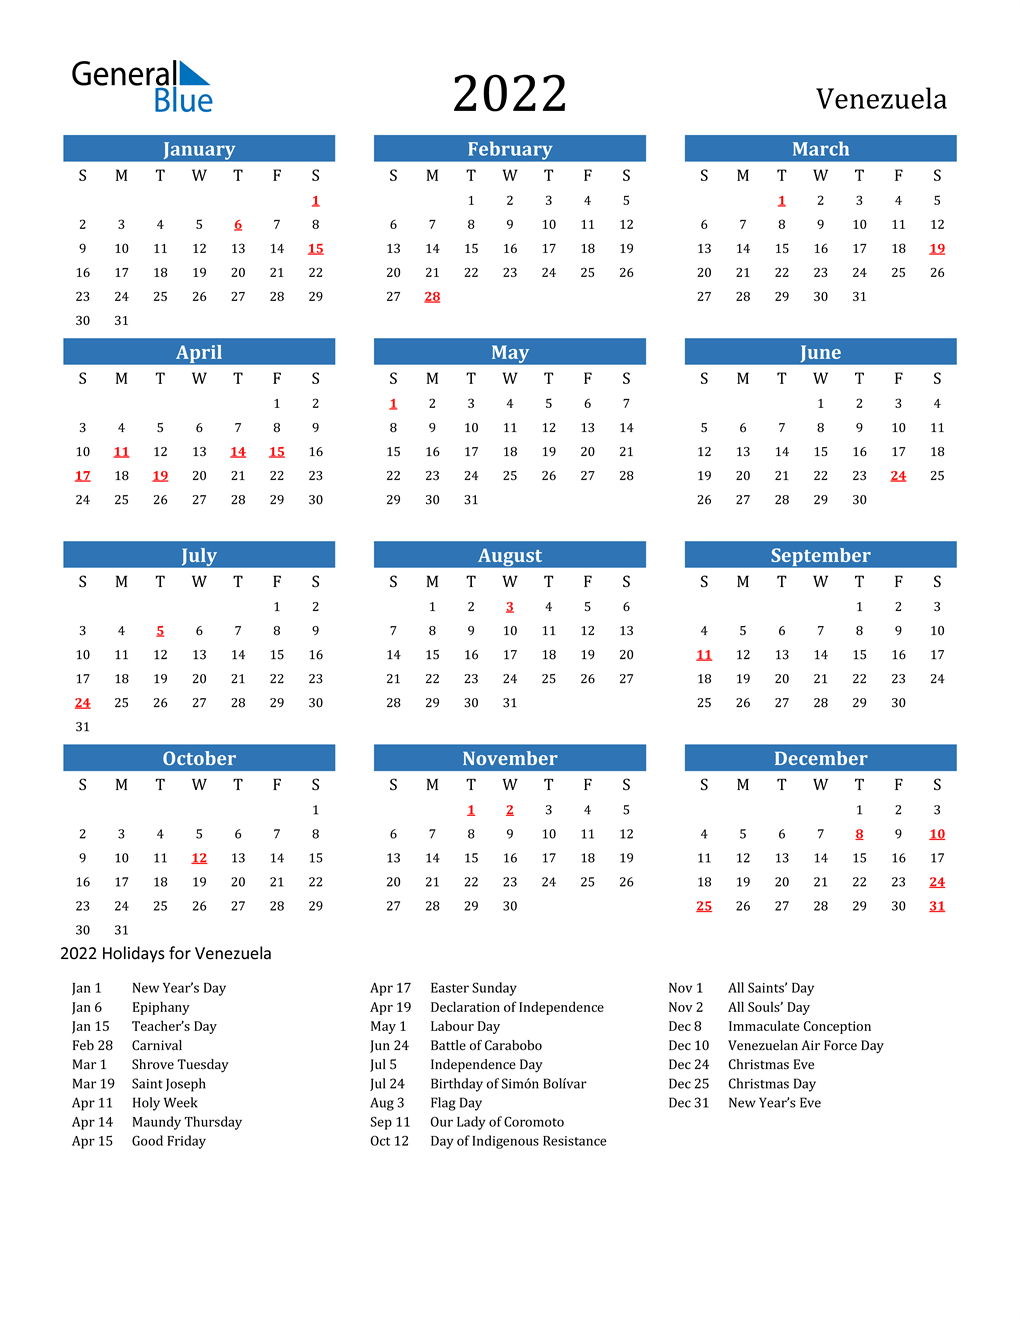 Zodiac Calendar 2022 Venezuela